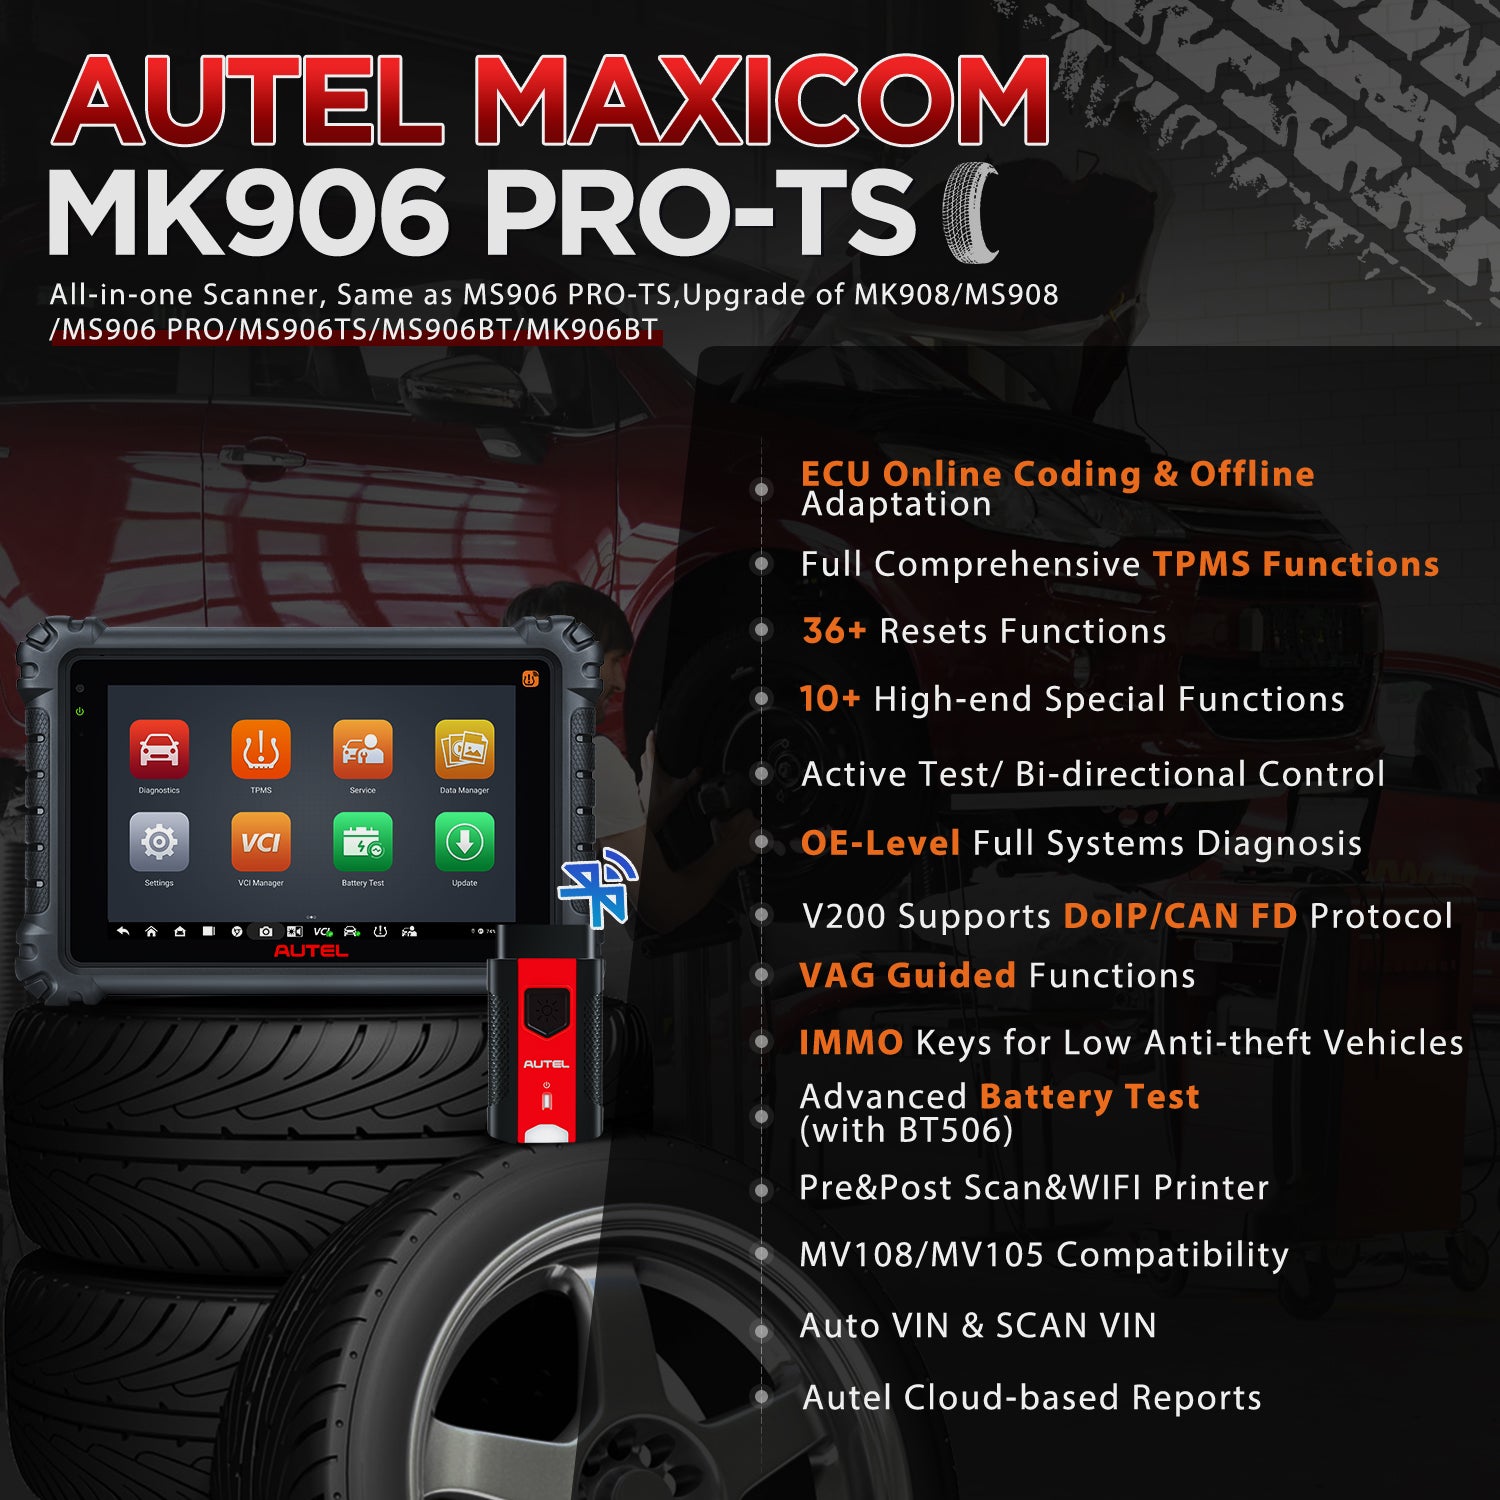 Autel MaxiCOM MK906 Pro-TS features